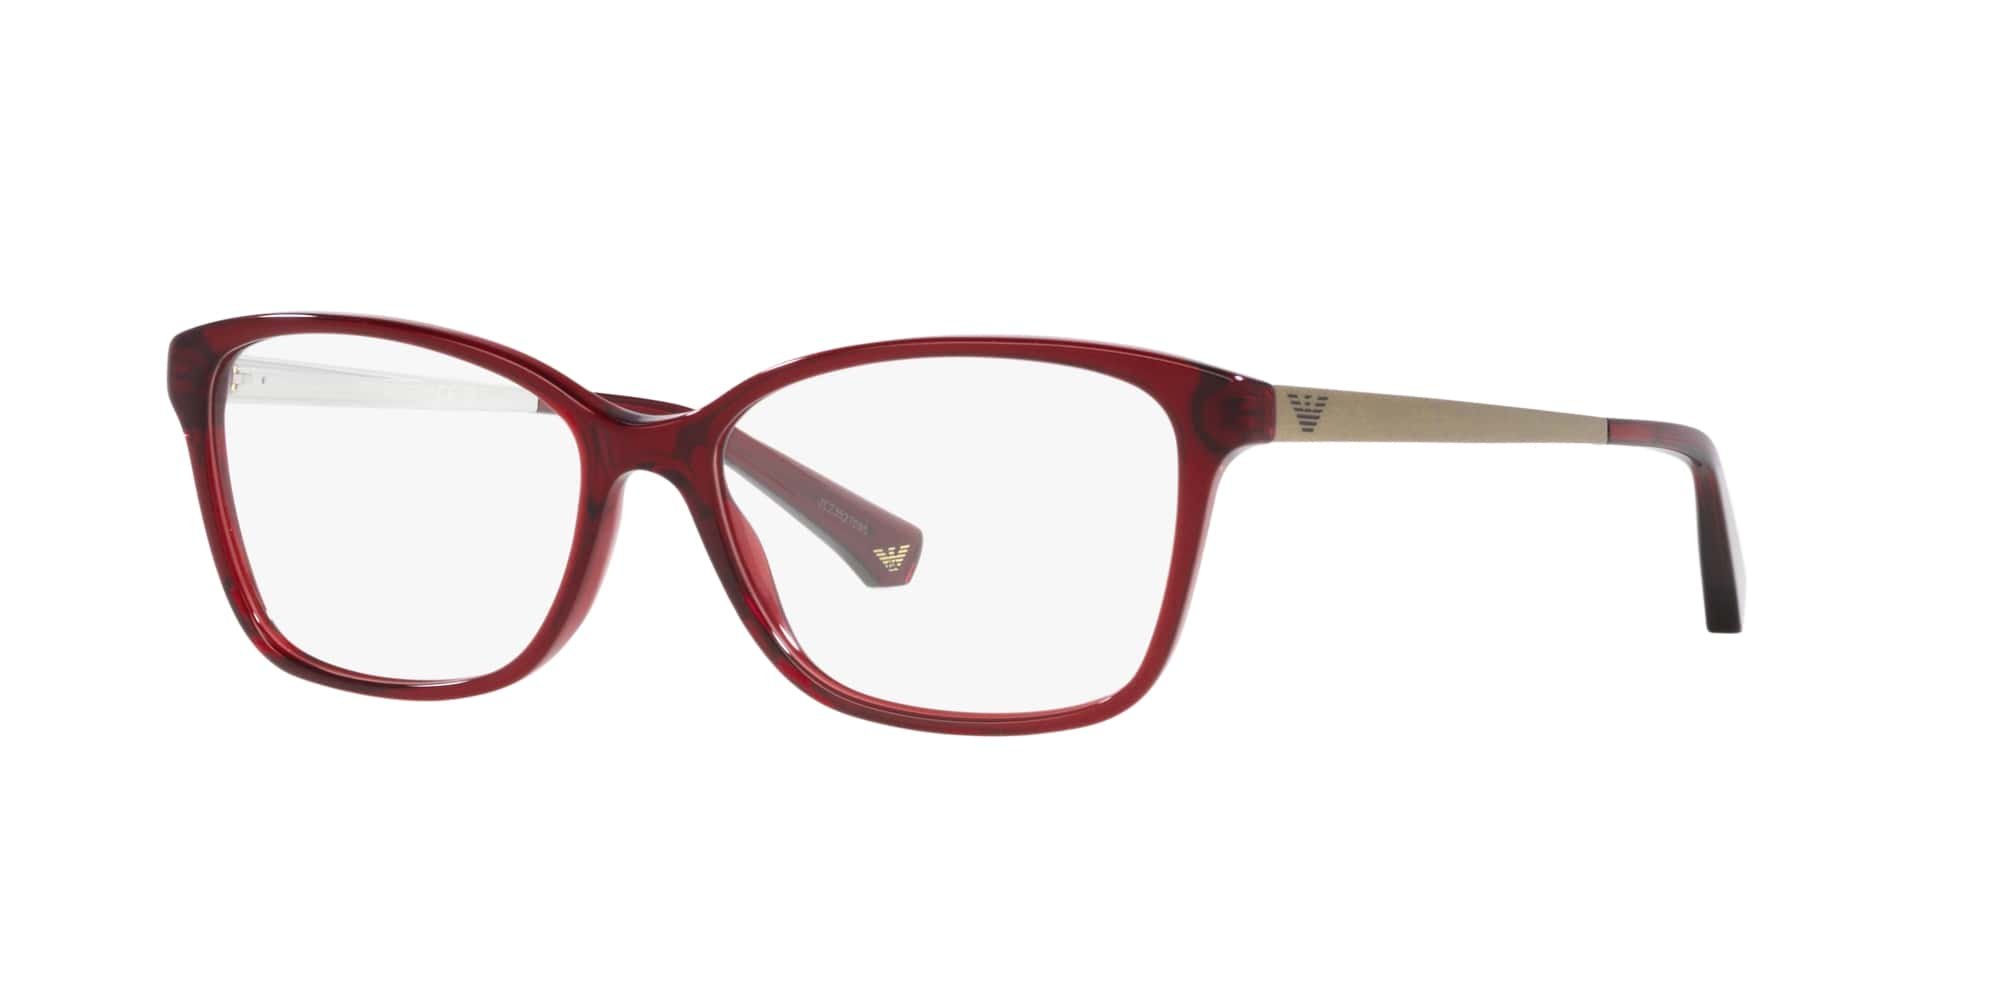 Das Bild zeigt die Korrektionsbrille EA3026 5968 von der Marke Emporio Armani in Bordeaux.